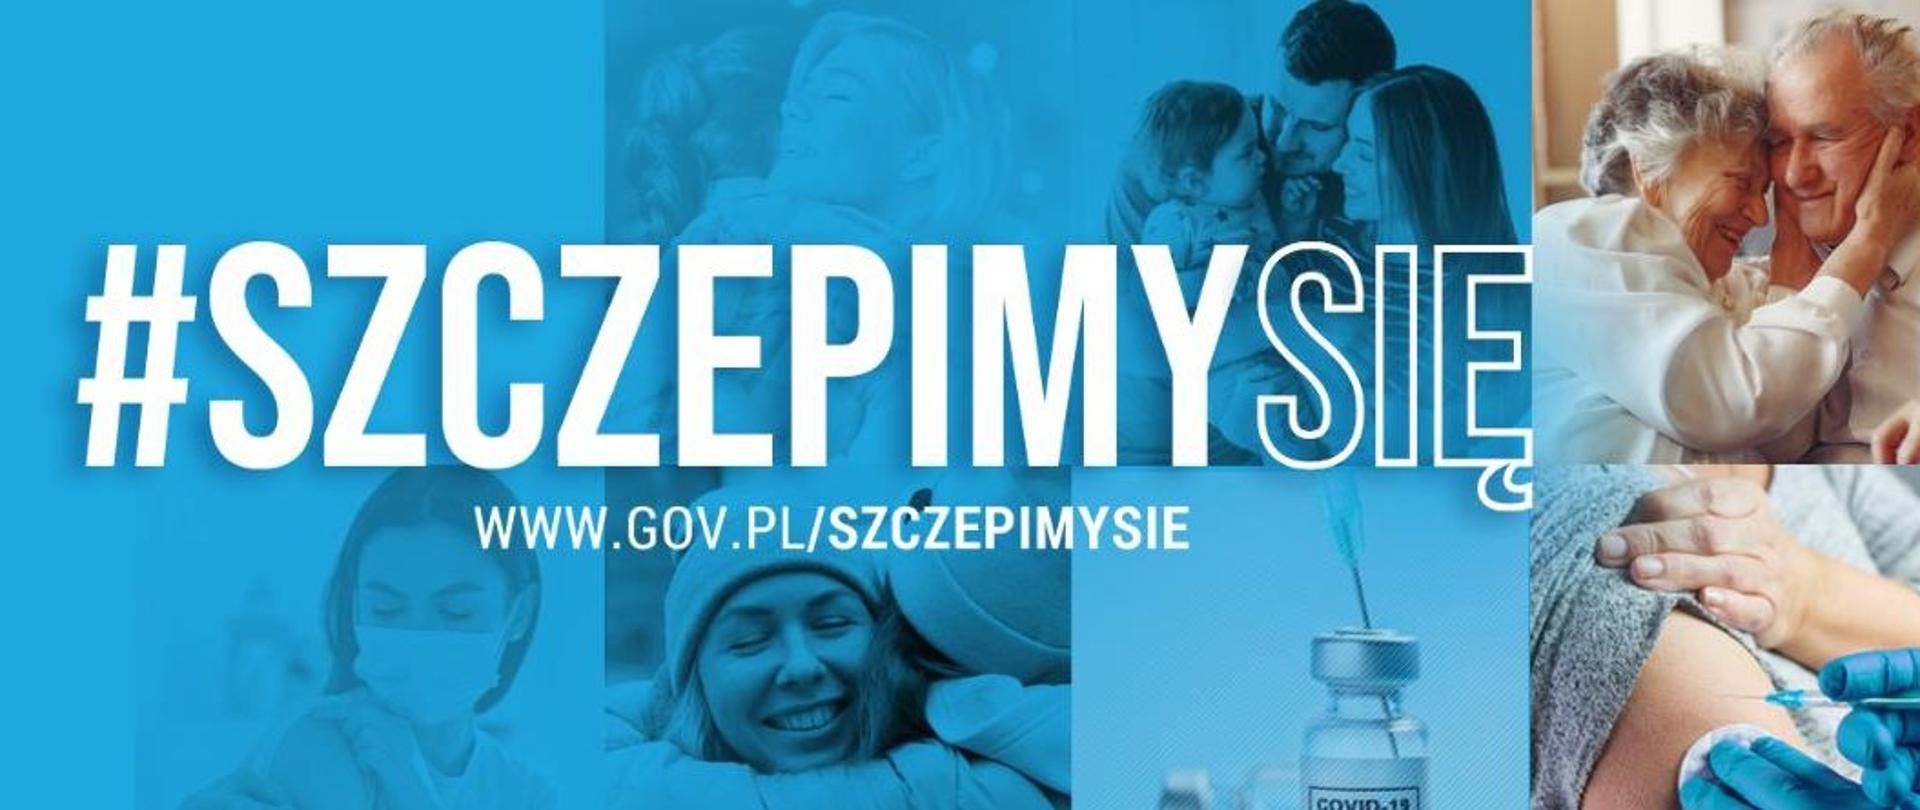  baner relamowy niebieski, na którym w tle są fotografie uśmiechniętych ludzi, rodzin, tulących się do siebie osób oraz szczepionki, a na nim jest biały napis #szczepimysię i adres www.gov.pl/szczepimysie